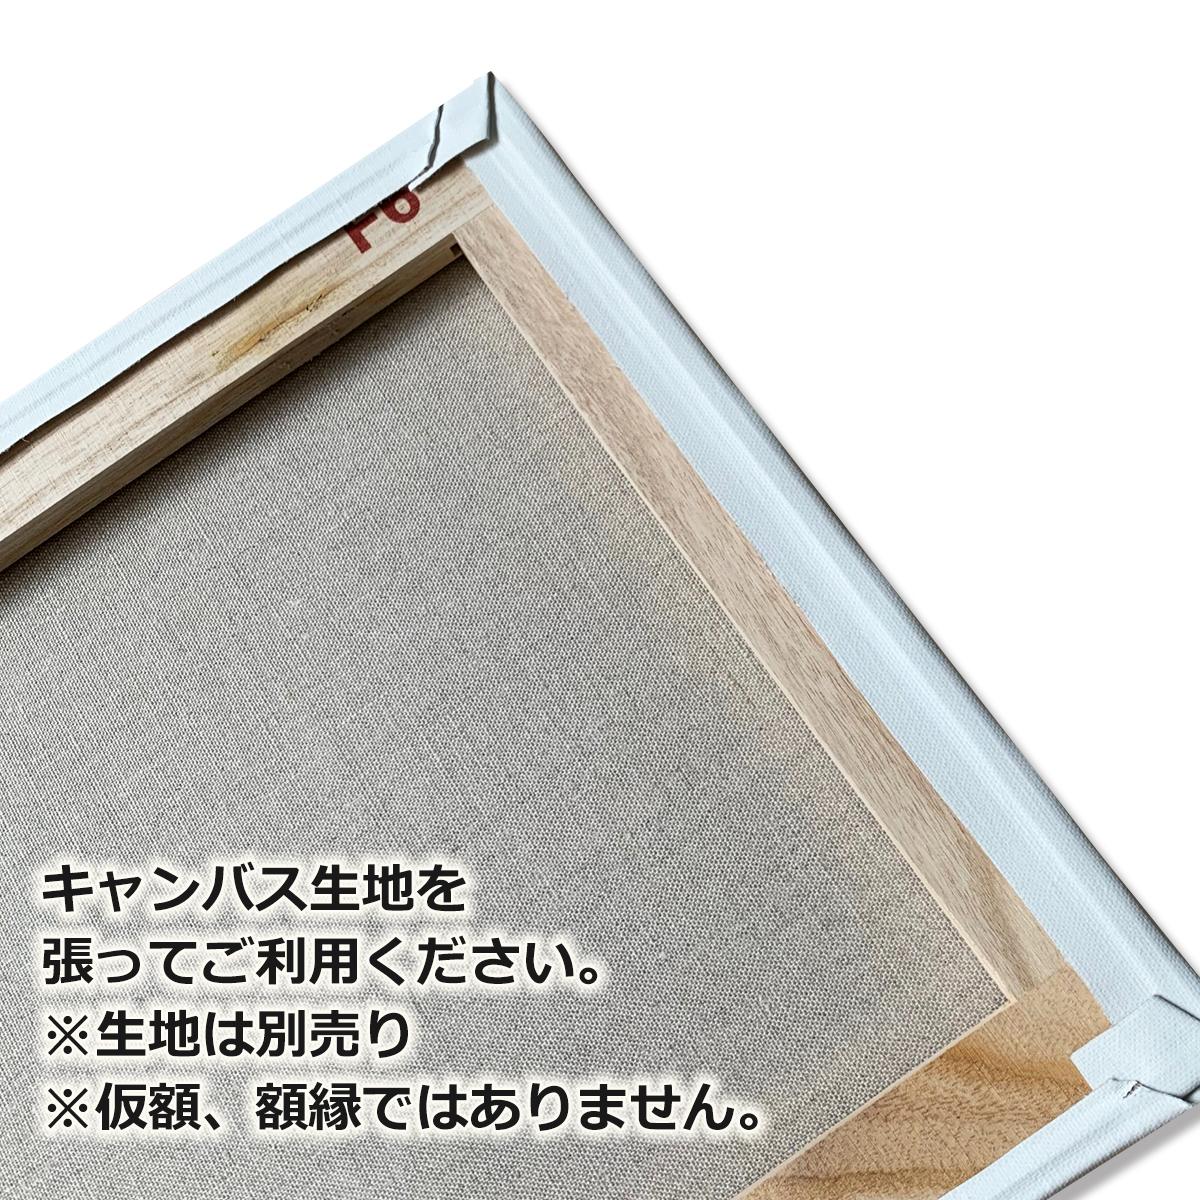 キャンバス用 木枠 F4号 33.3×24.2cm 桐材 クレサンジャパン 